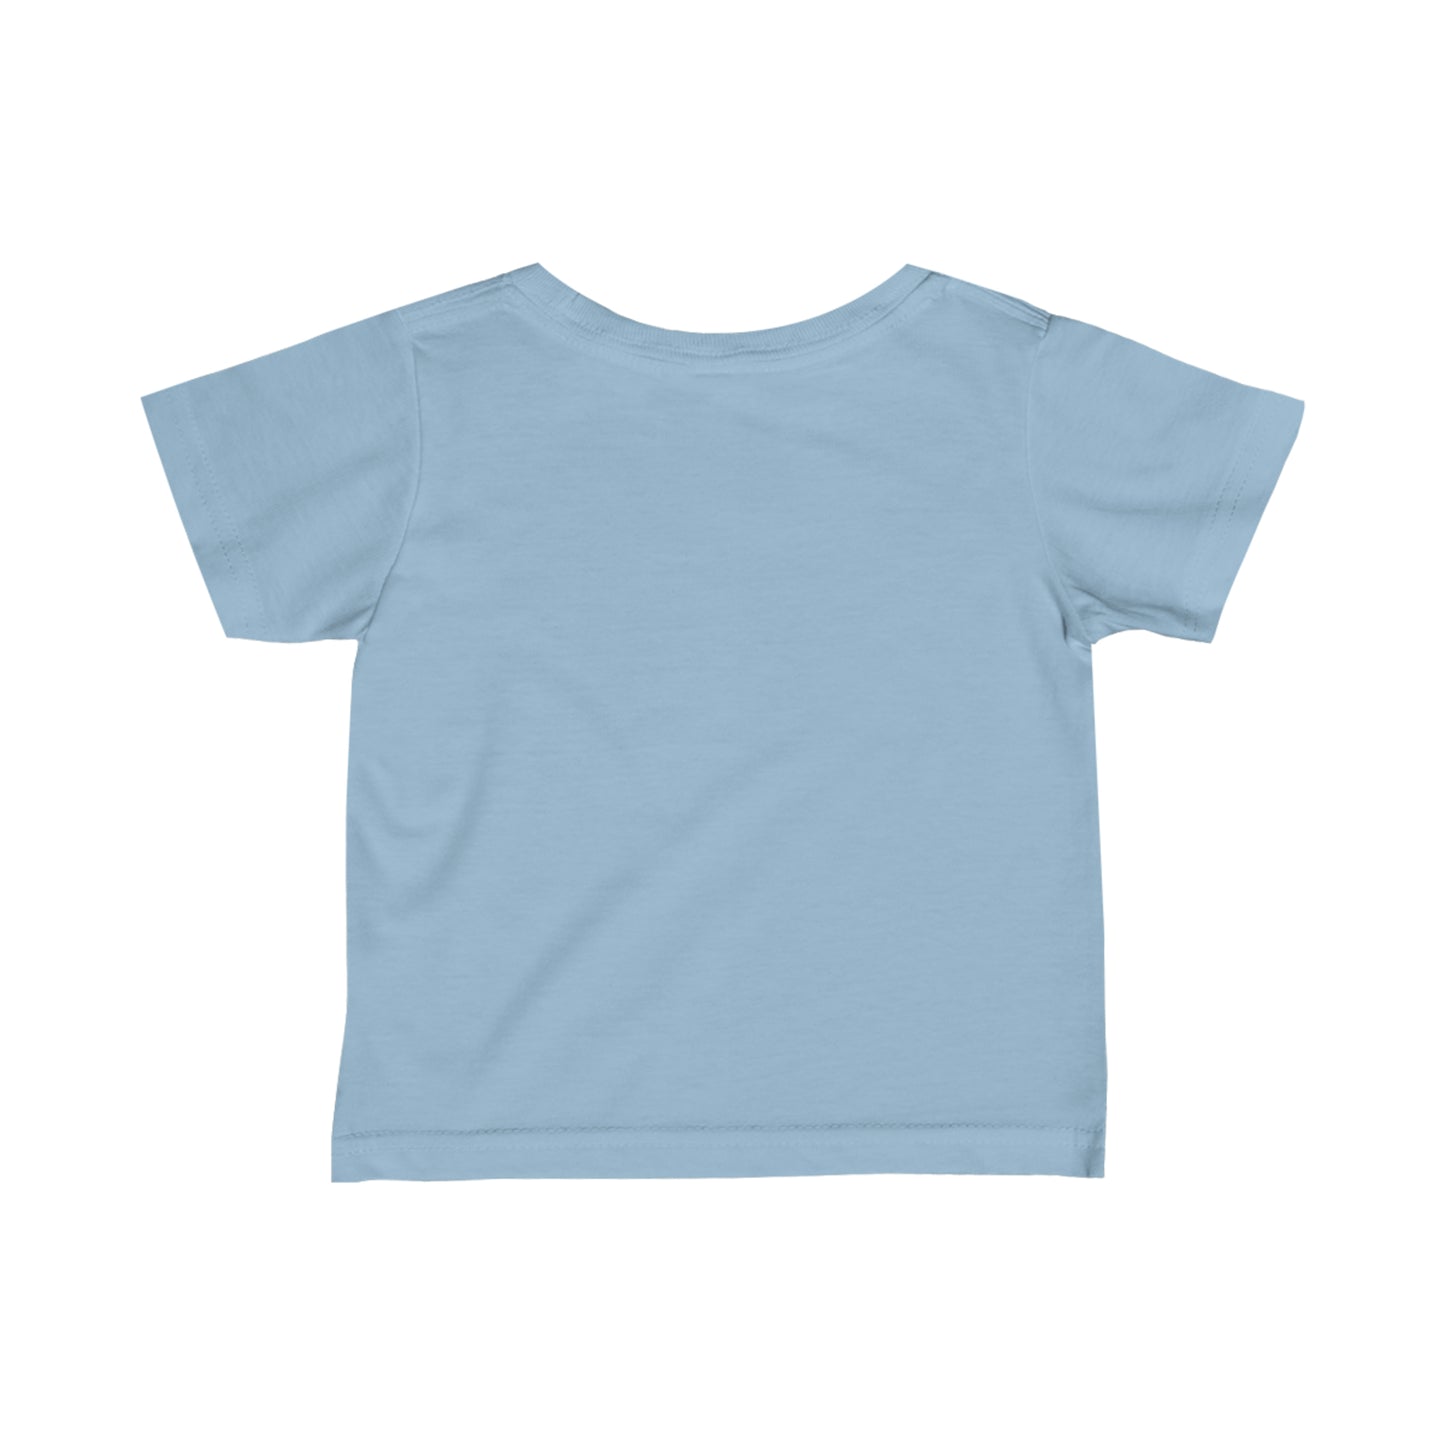 TULIPS unisex print short-sleeved t-shirt for 6m-24m